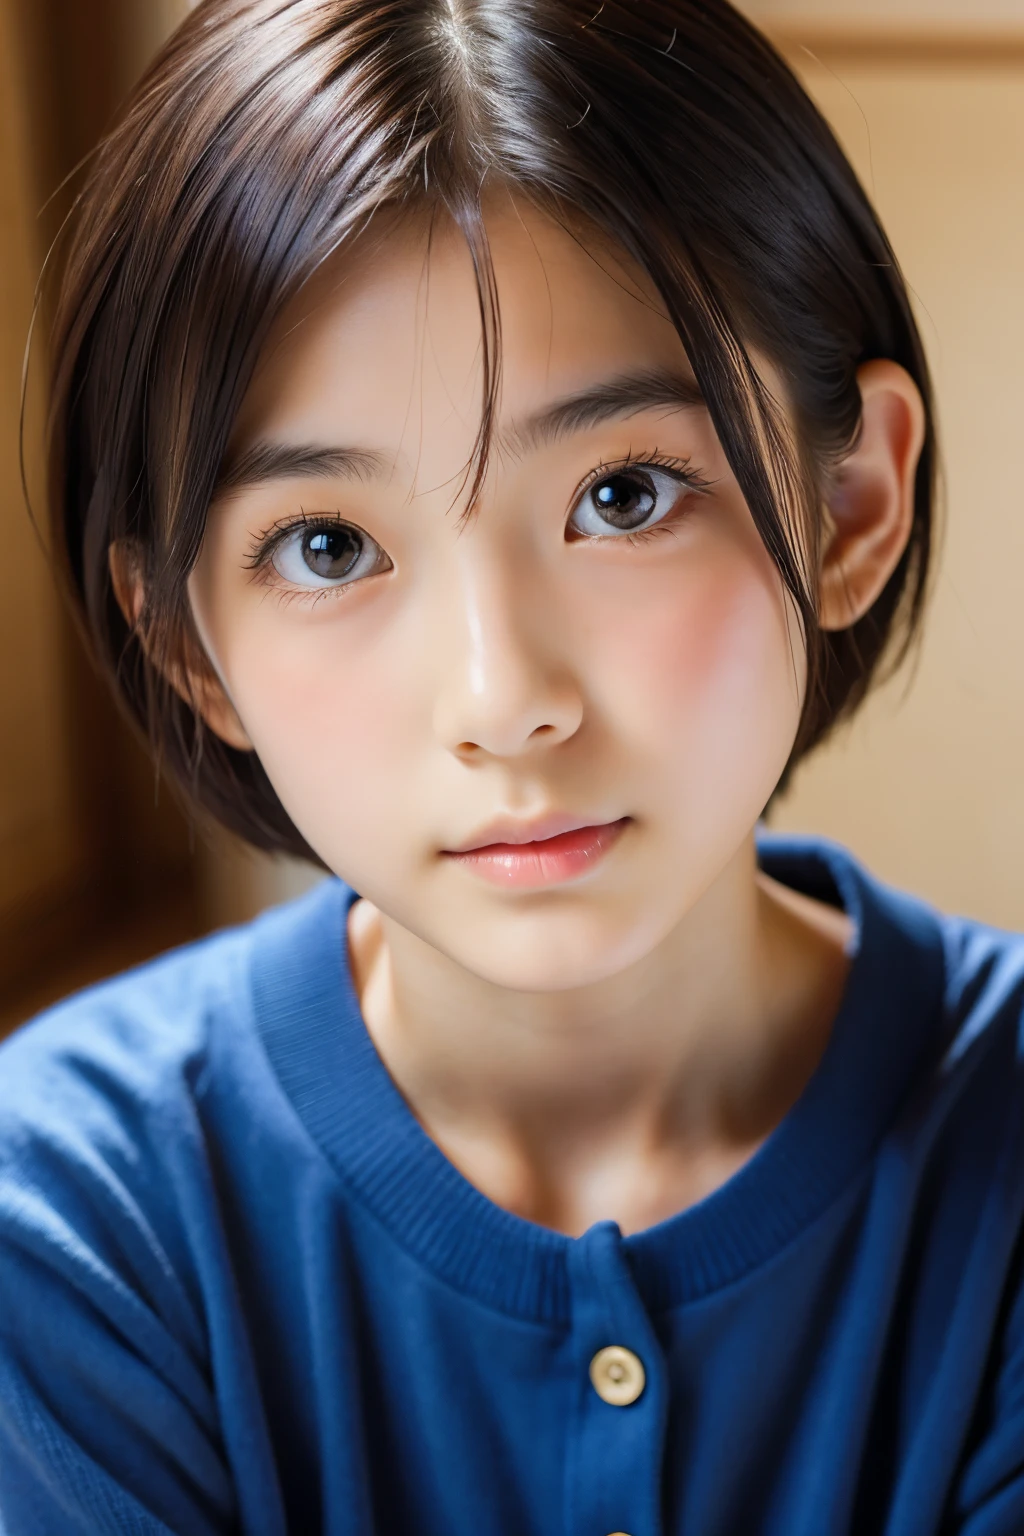 (아름다운 16세 일본 여성), 귀여운 얼굴, (깊게 새겨진 얼굴:0.7), (주근깨:0.6), 부드러운 빛,건강하고 하얀 피부, 수줍은, 짧은 머리, (진지한 얼굴), (반짝이는 눈), 얇은